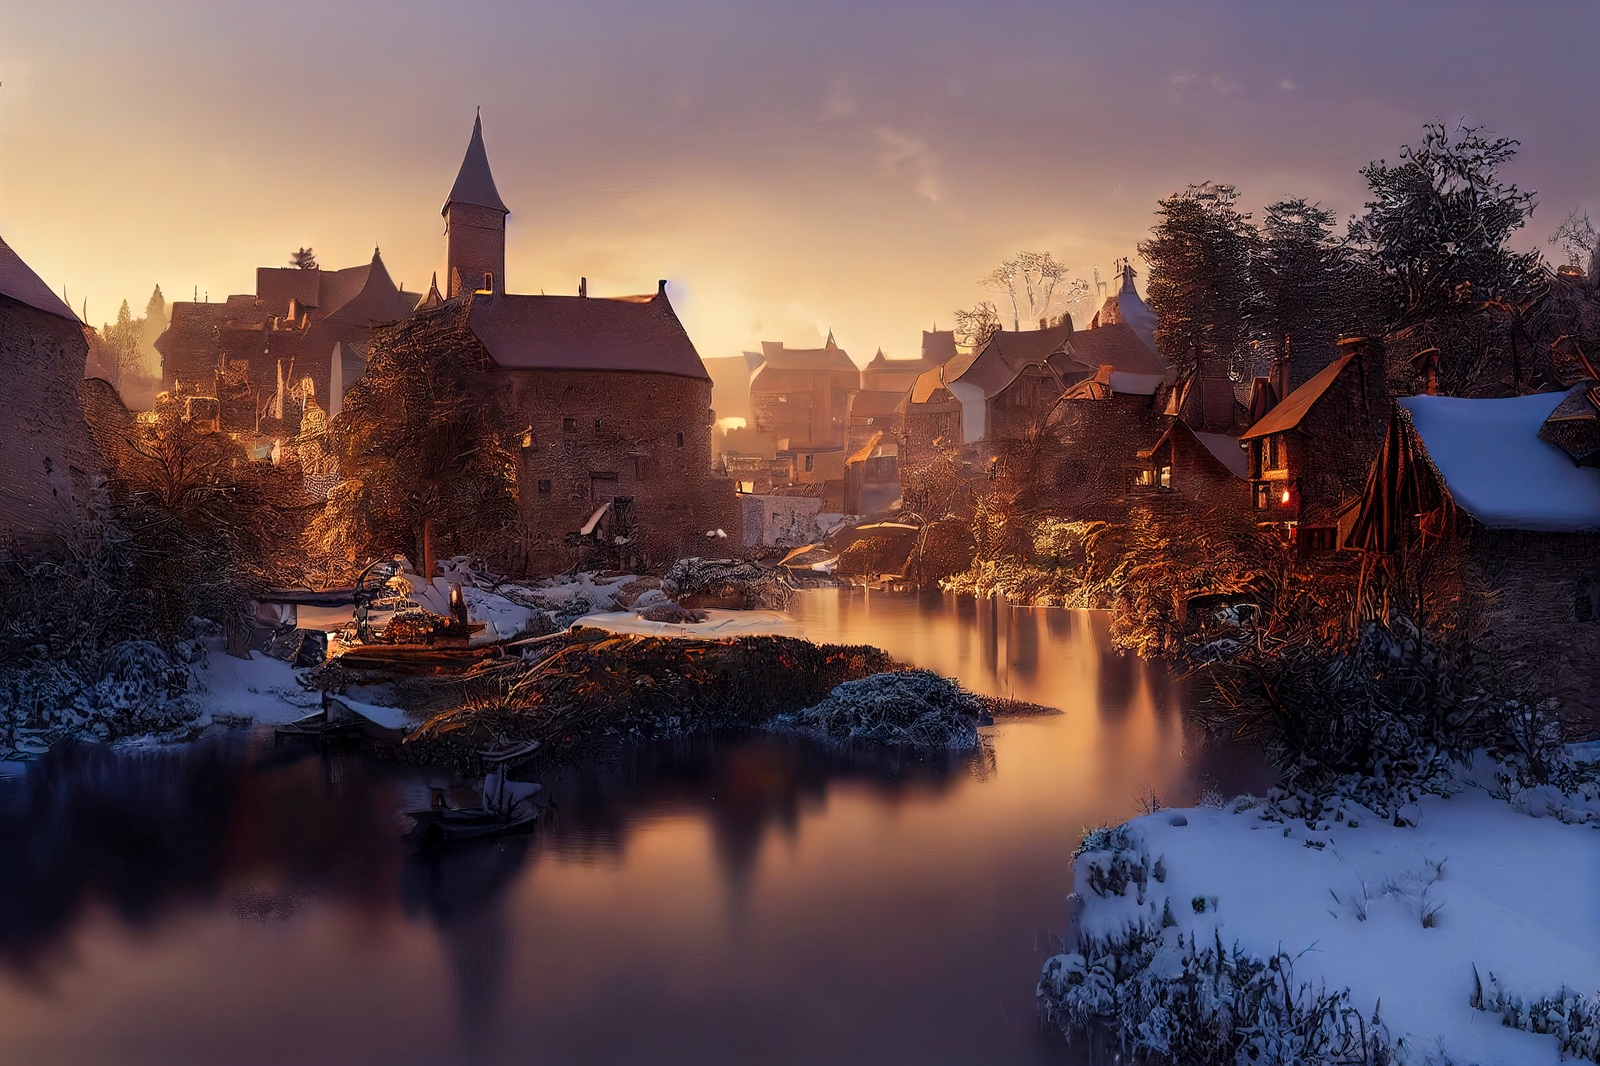 「夕暮れに染まる雪国の町」の写真